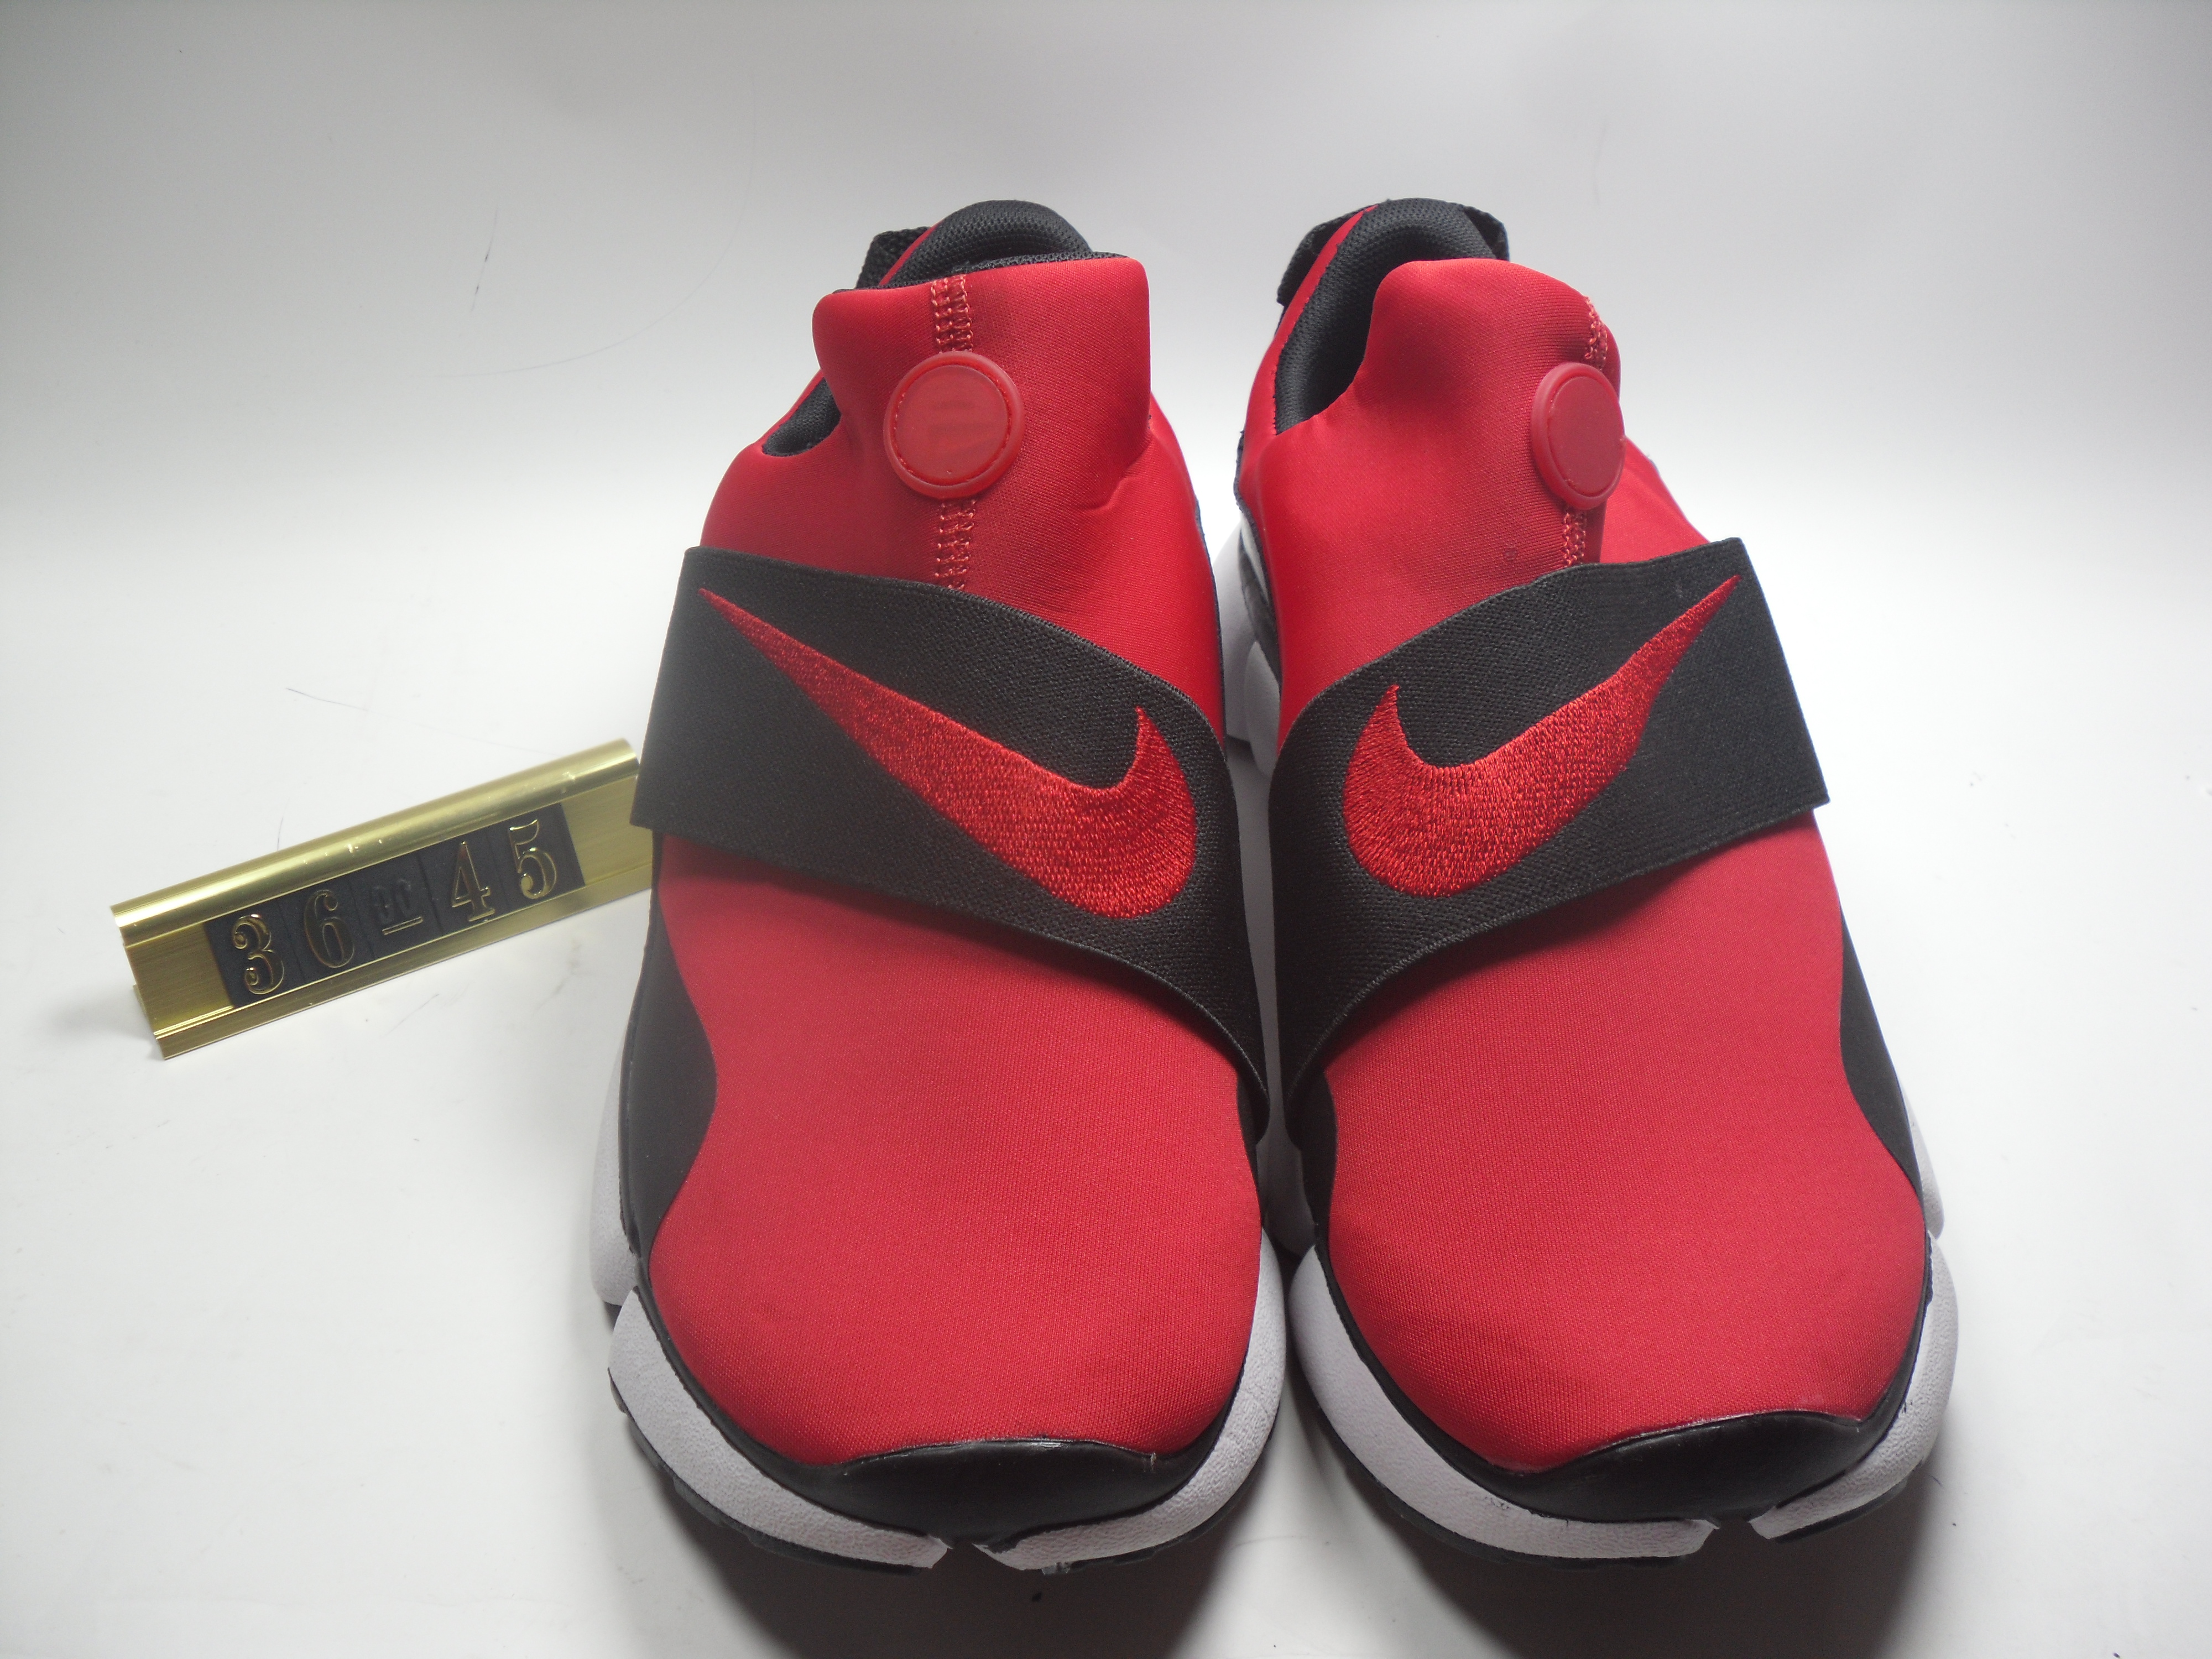 Nike Air Huarache 5 Red Black Strap Shoes